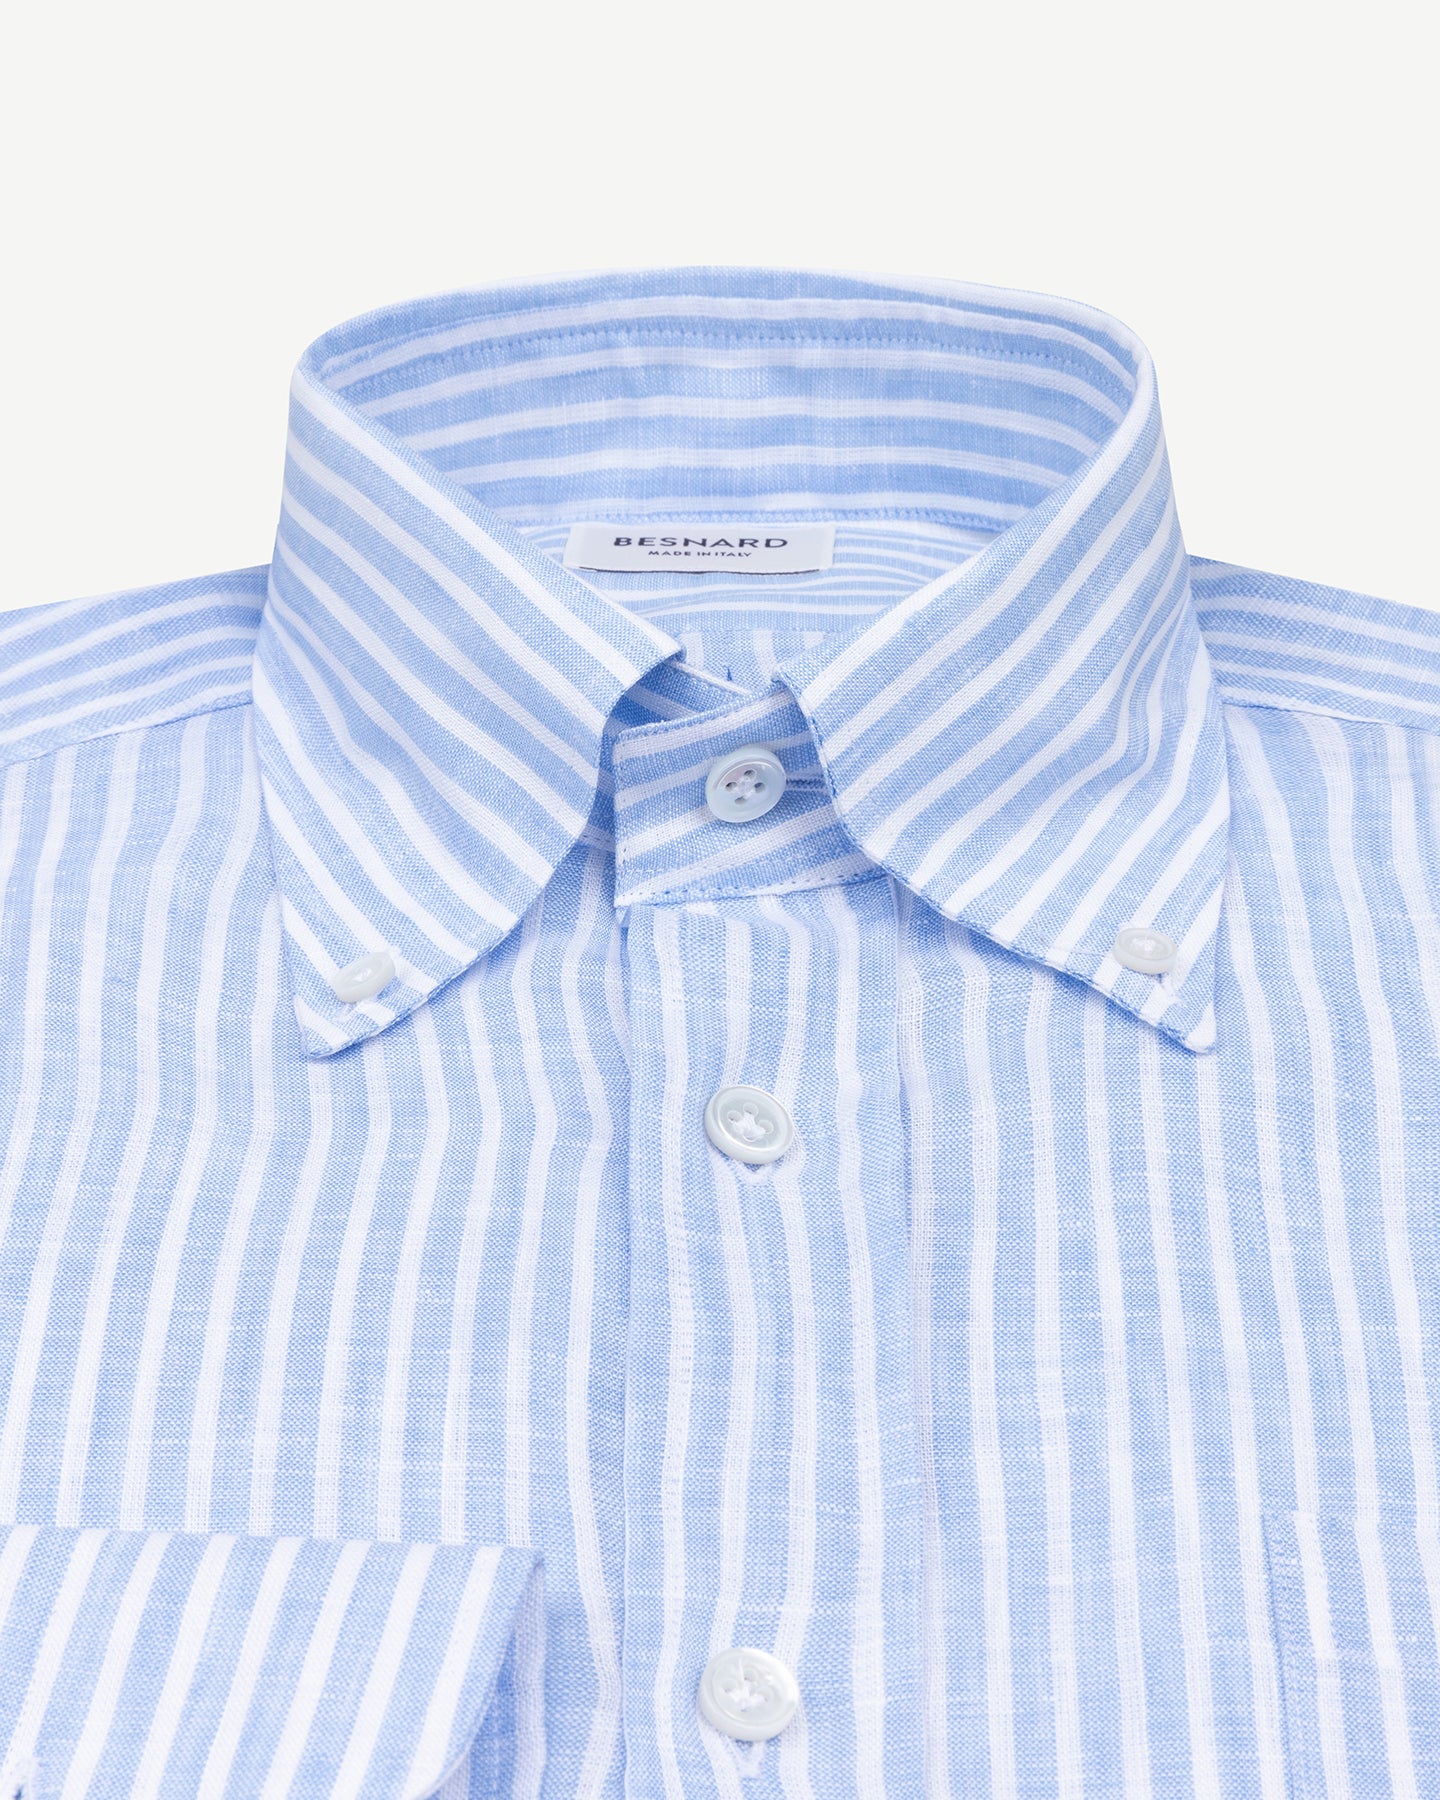 Light blue reverse stripe linen shirt with button down collar